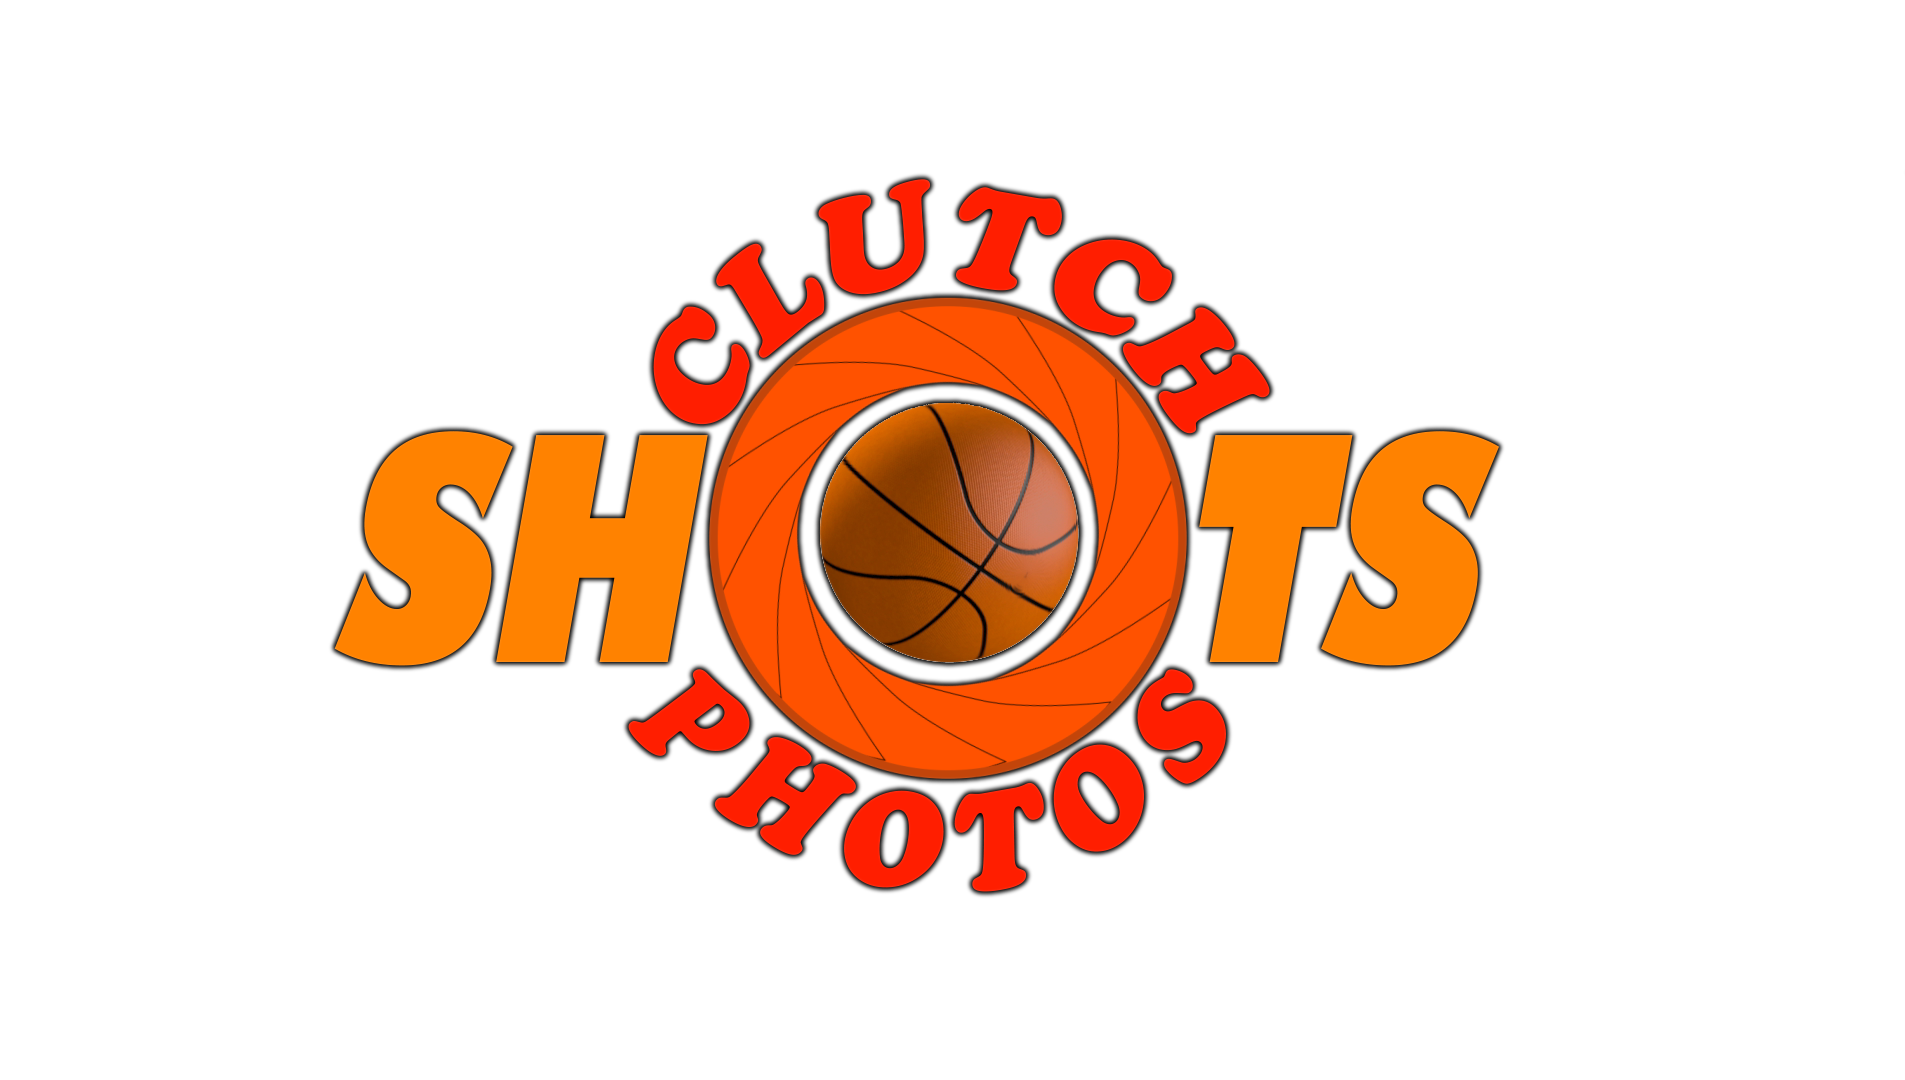 Clutch Shots